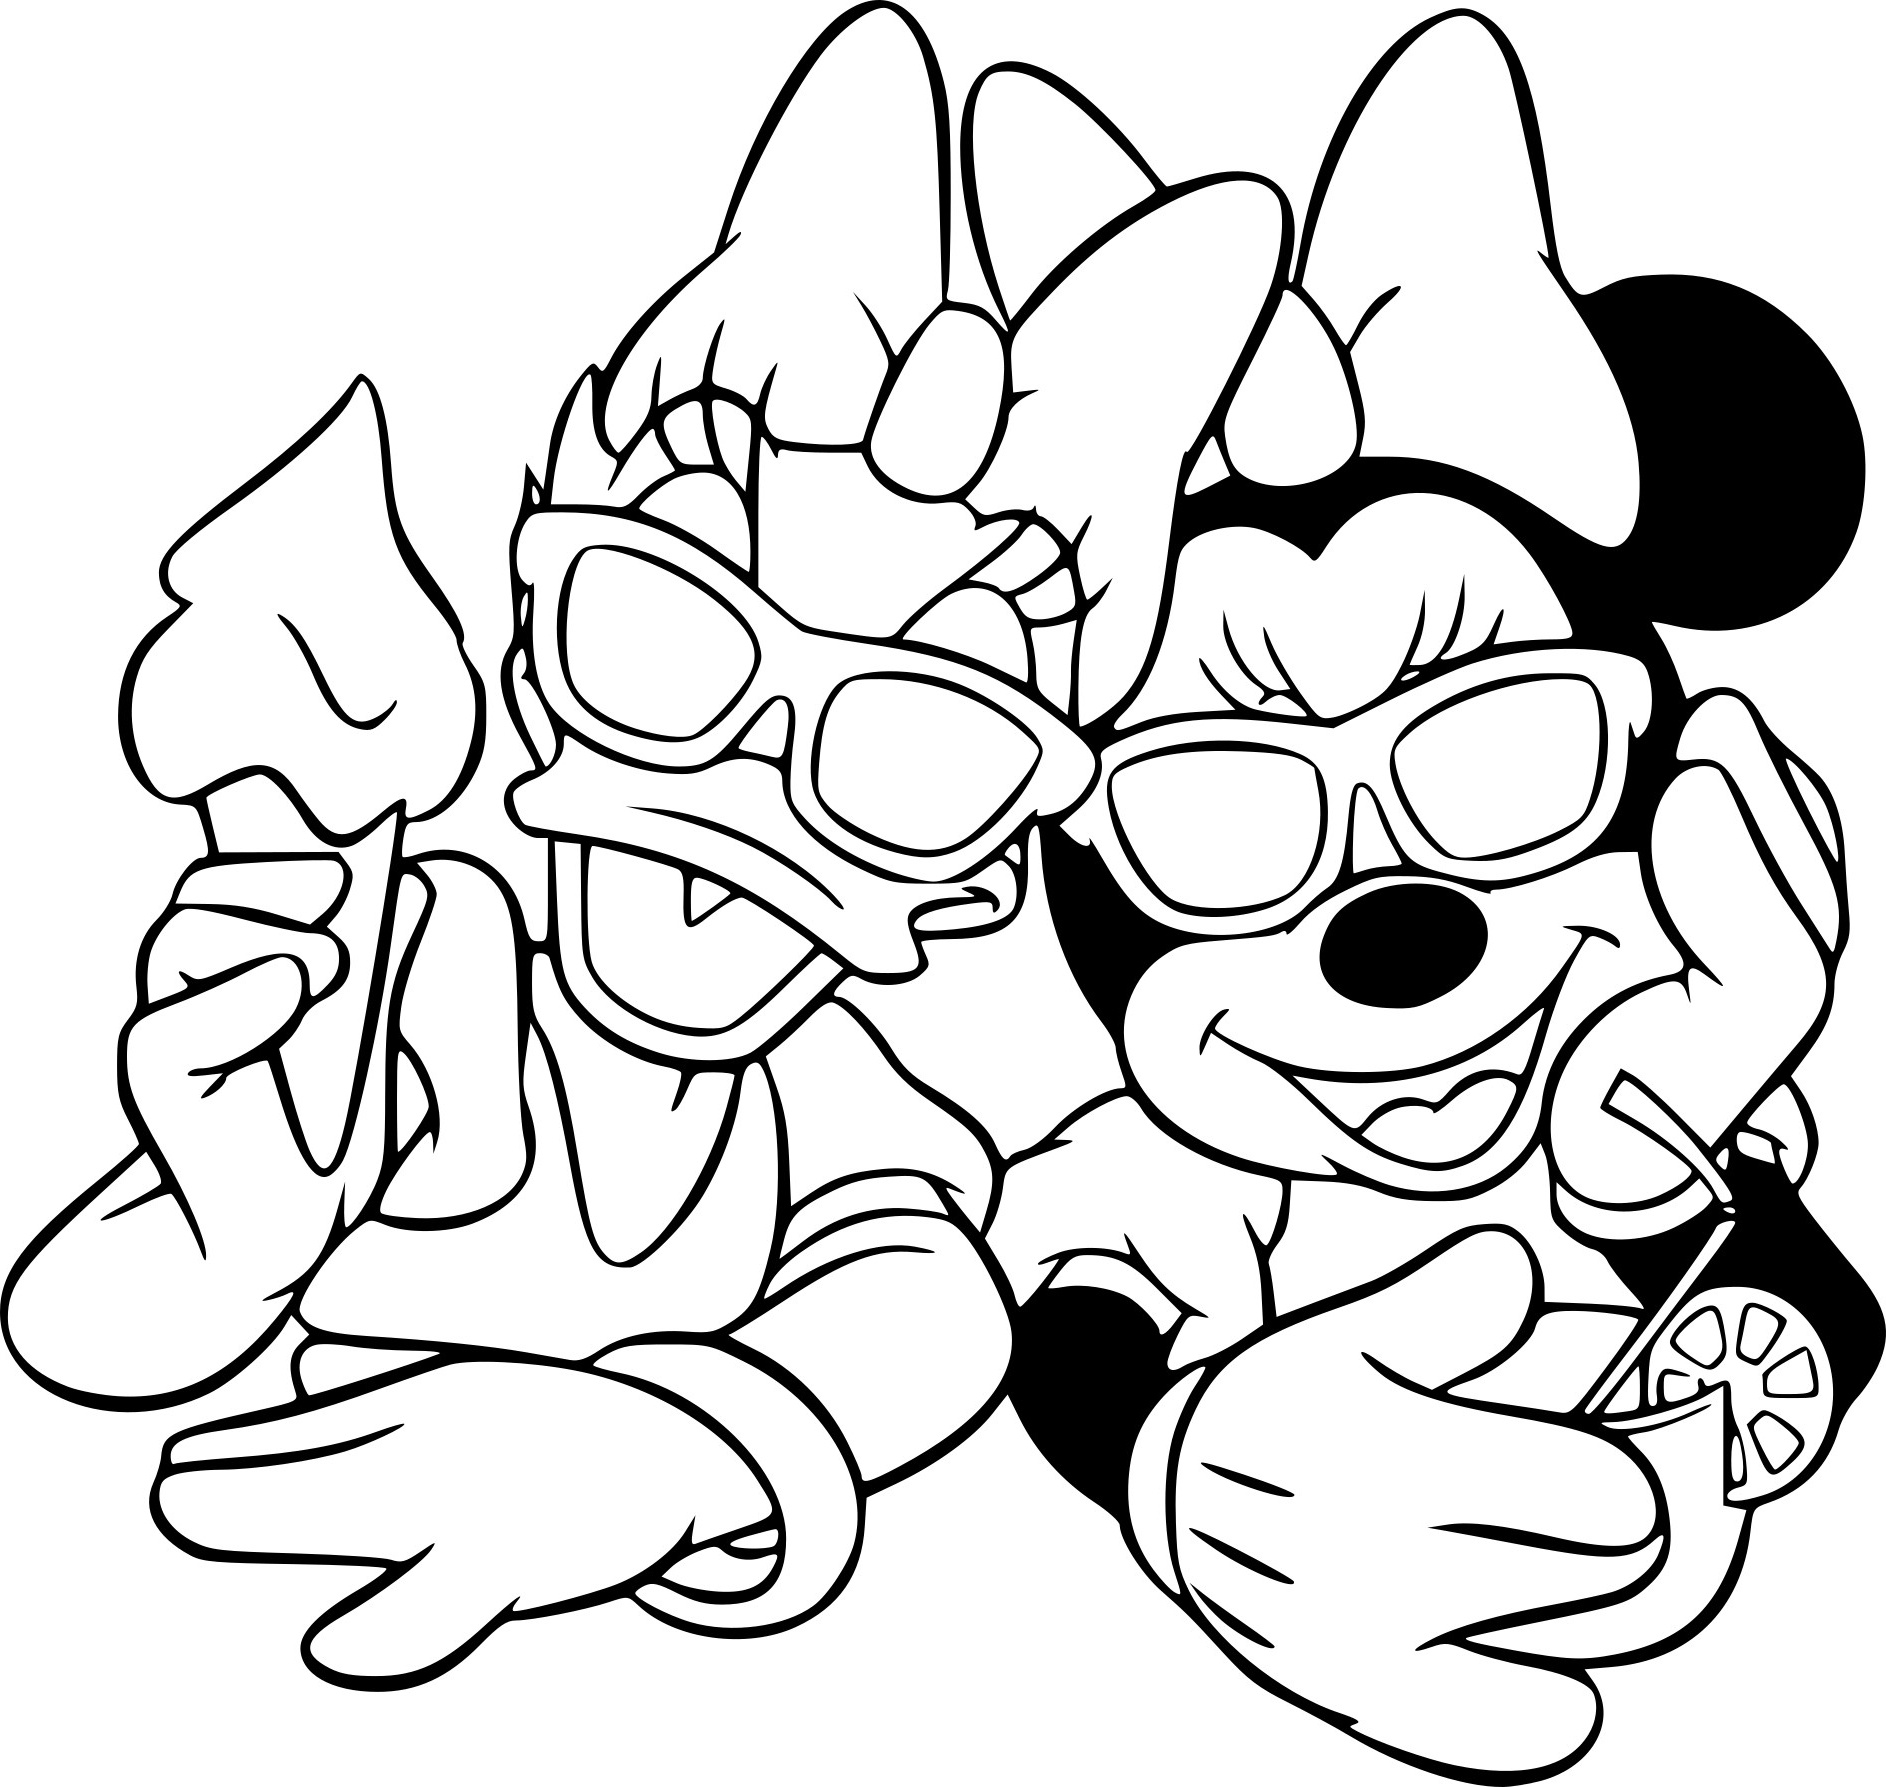 Coloriage à Imprimer Minnie Beau Images Coloriage Minnie Mouse Et Daisy Duck à Imprimer Sur